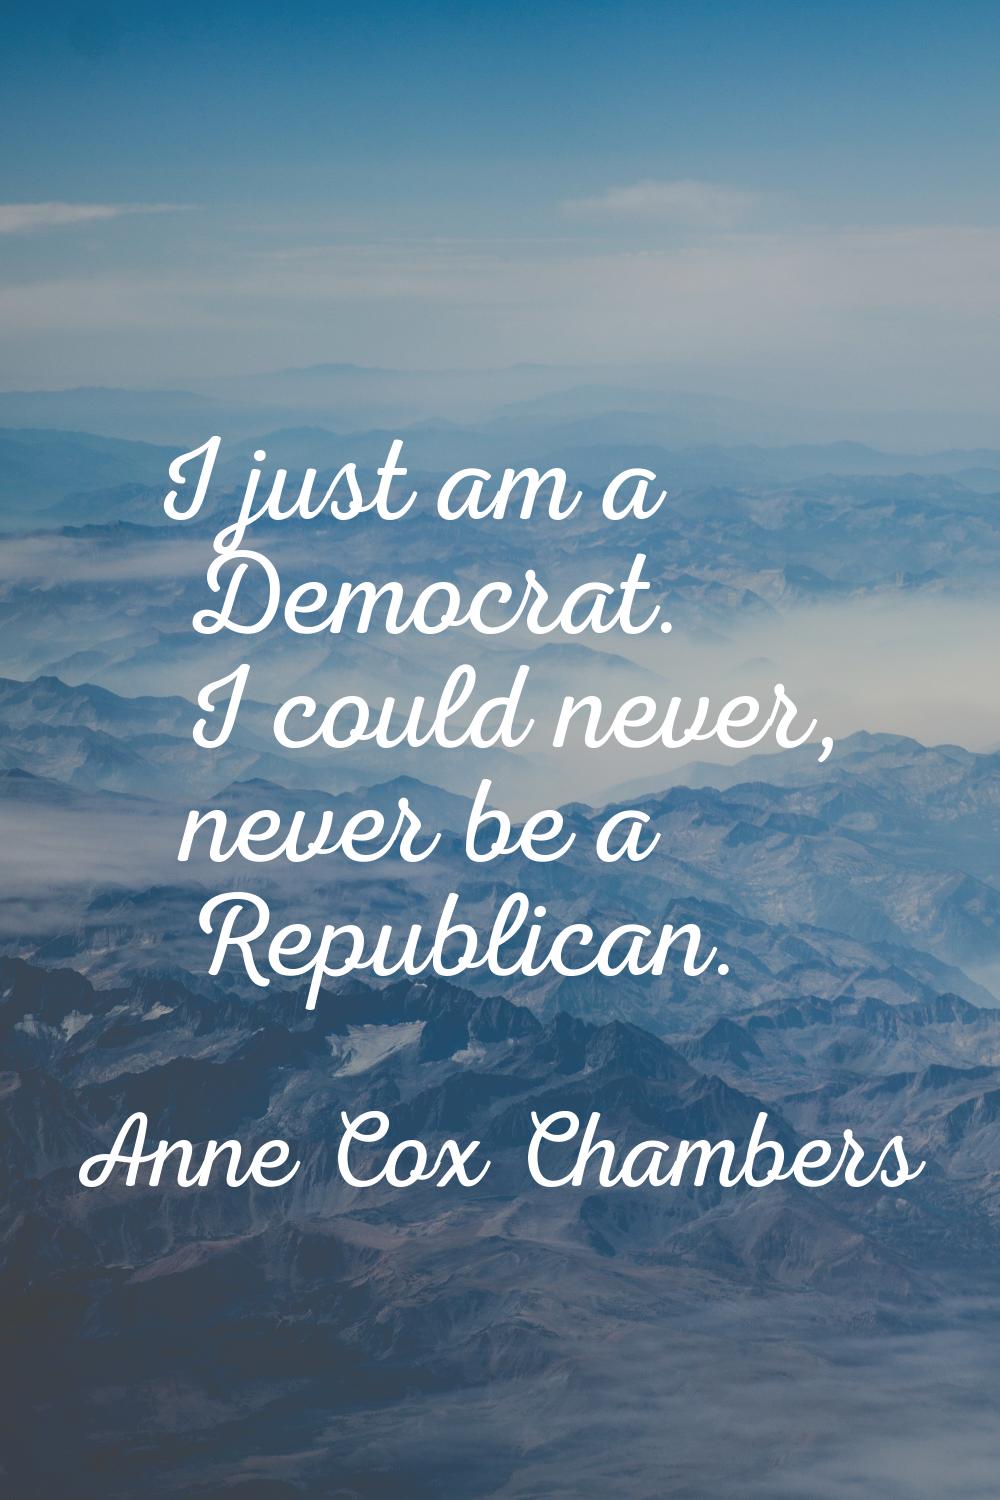 I just am a Democrat. I could never, never be a Republican.